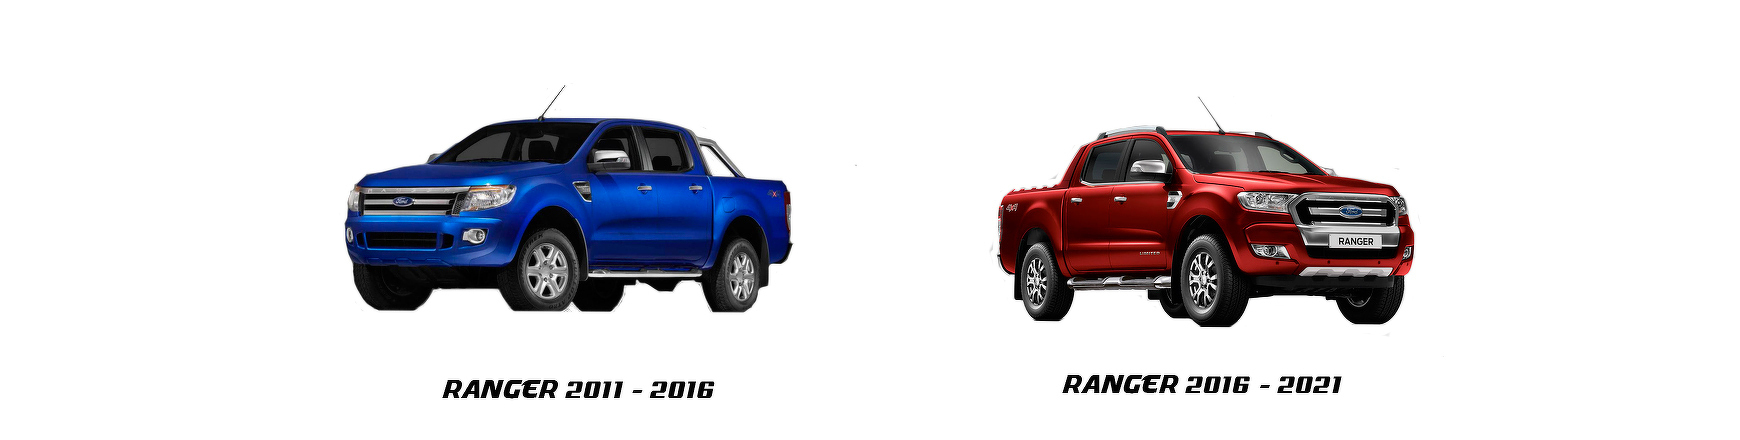 Ford ranger 2011 a 2016 - Veramauto.es